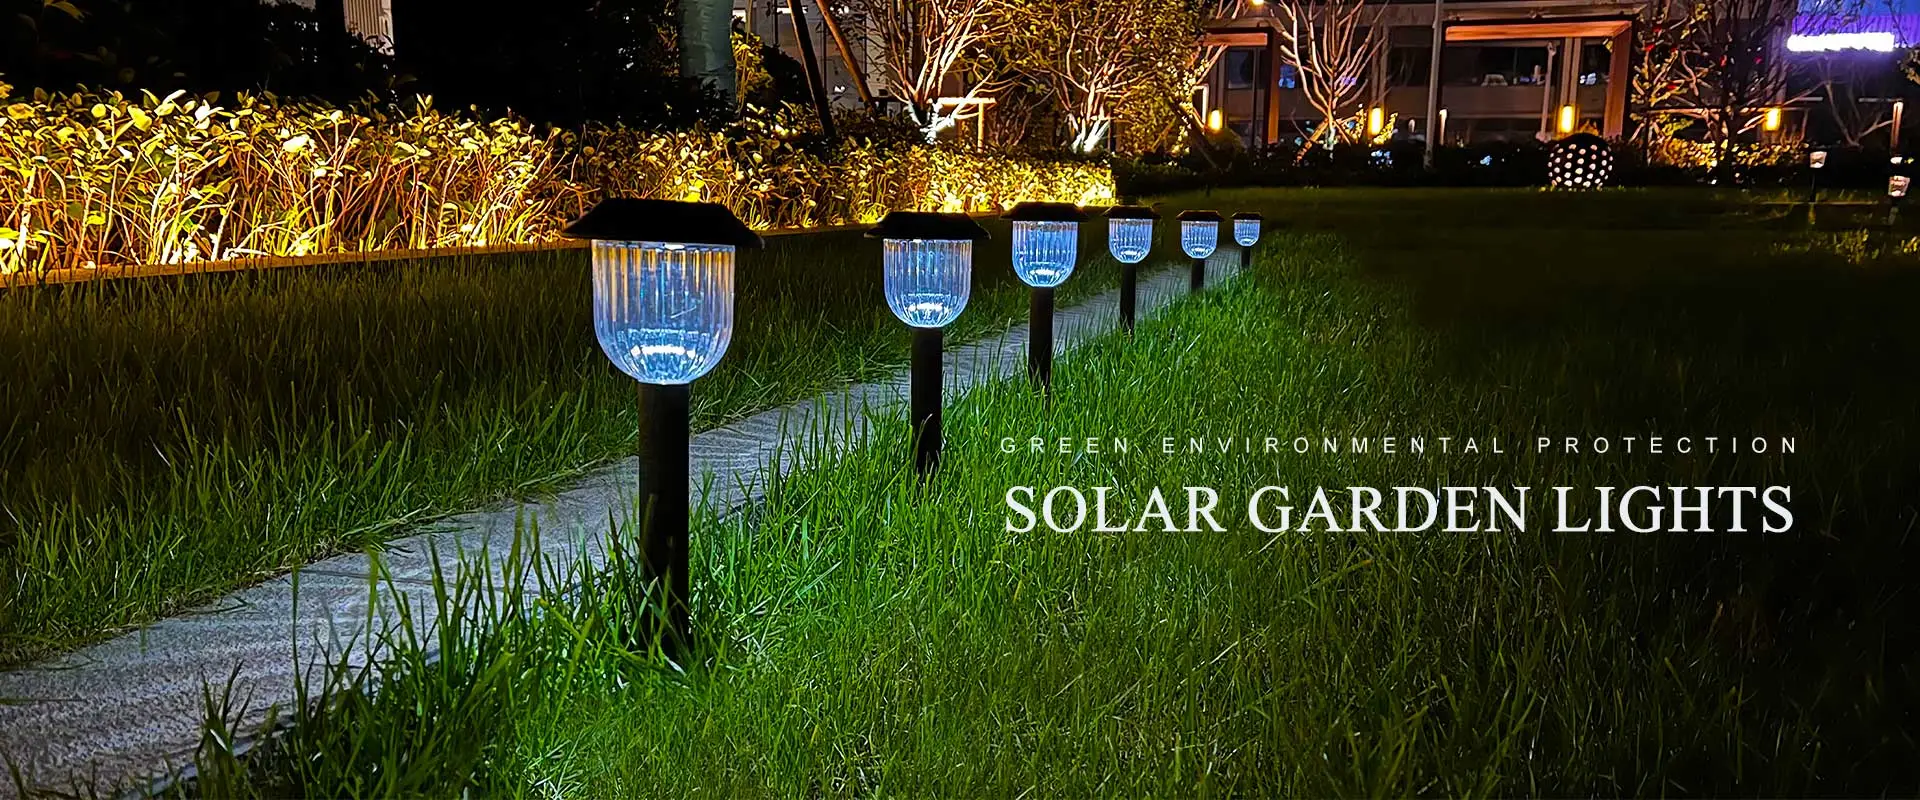 Mais recentes luzes solares de jardim extravagantes CE, Roth, UL, CPC